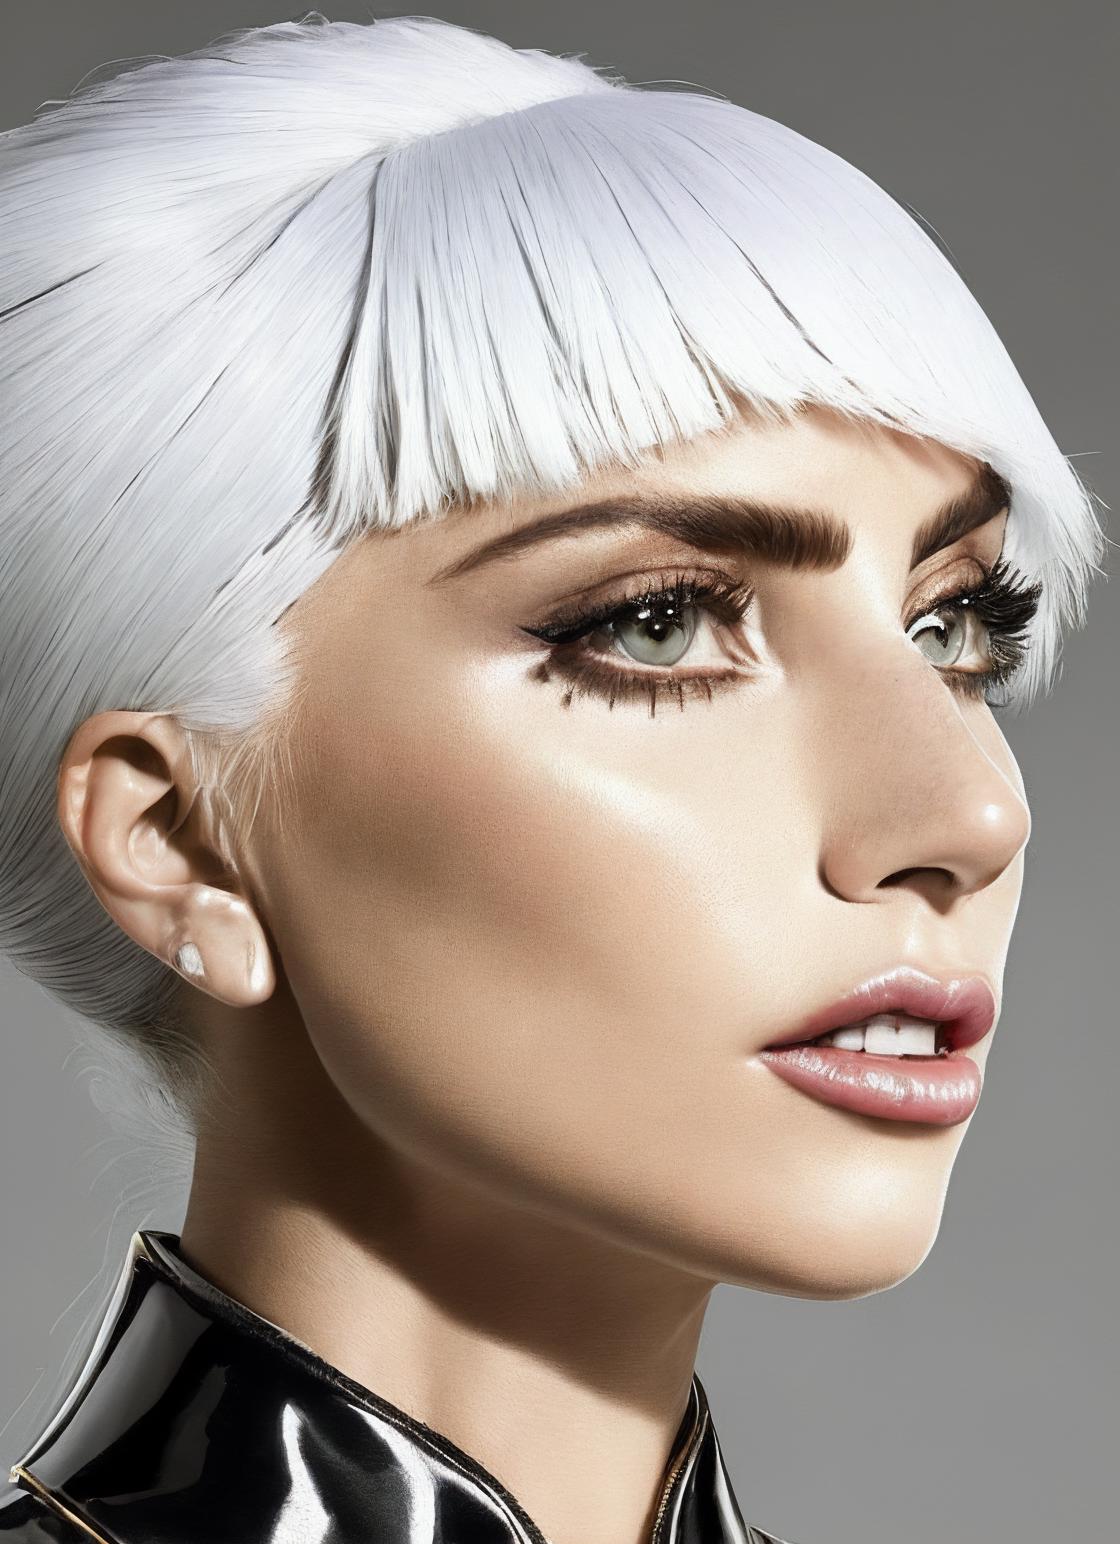 Lady Gaga image by malcolmrey